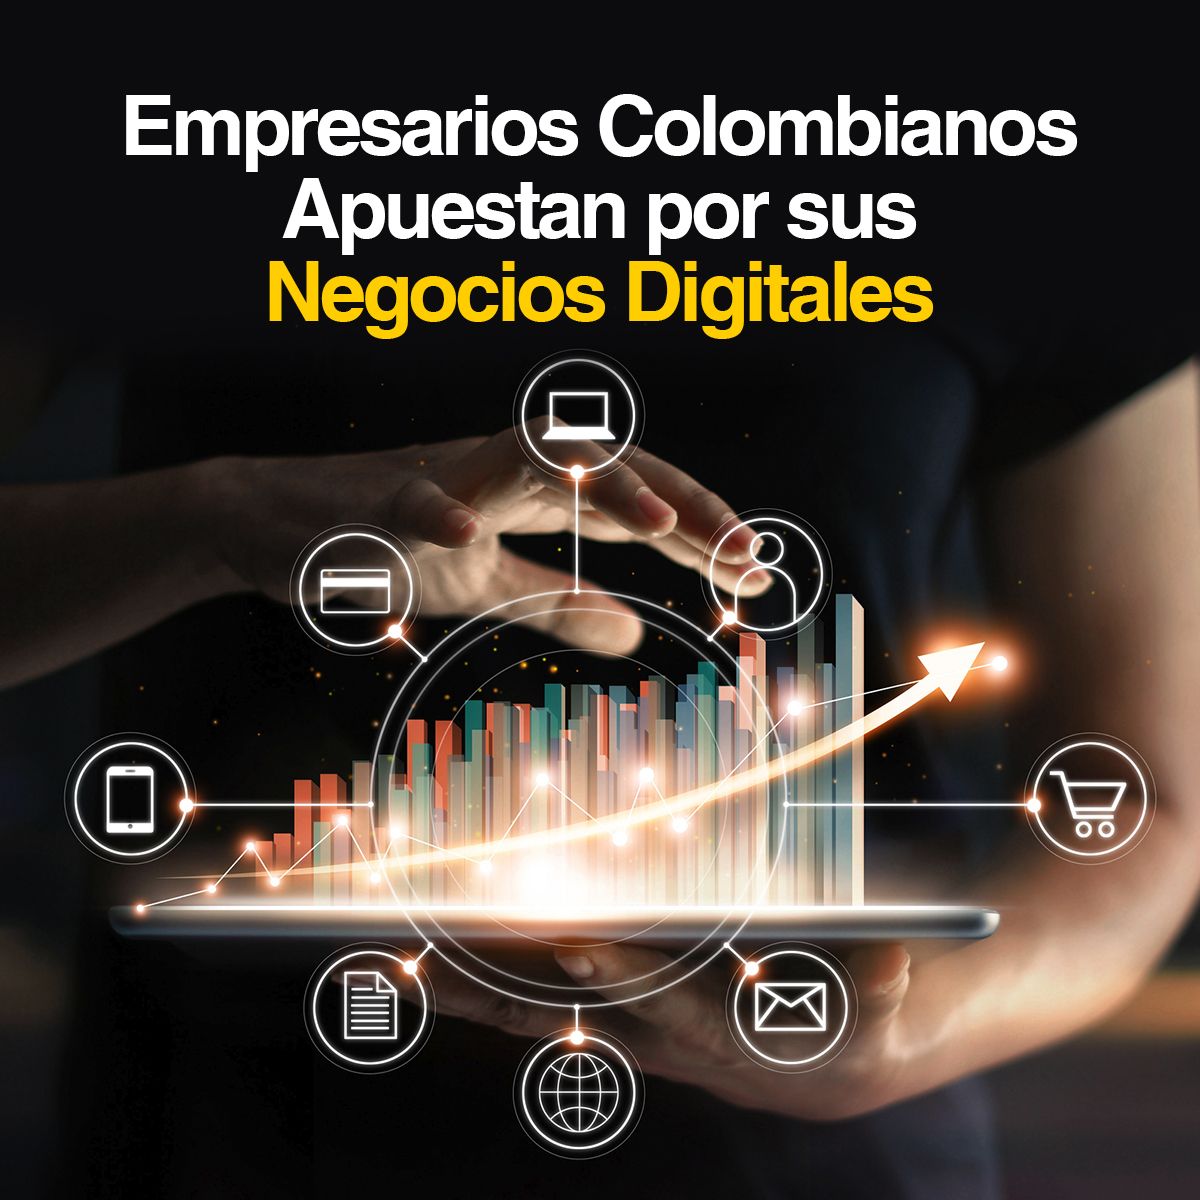 Empresarios Colombianos Apuestan por sus Negocios Digitales